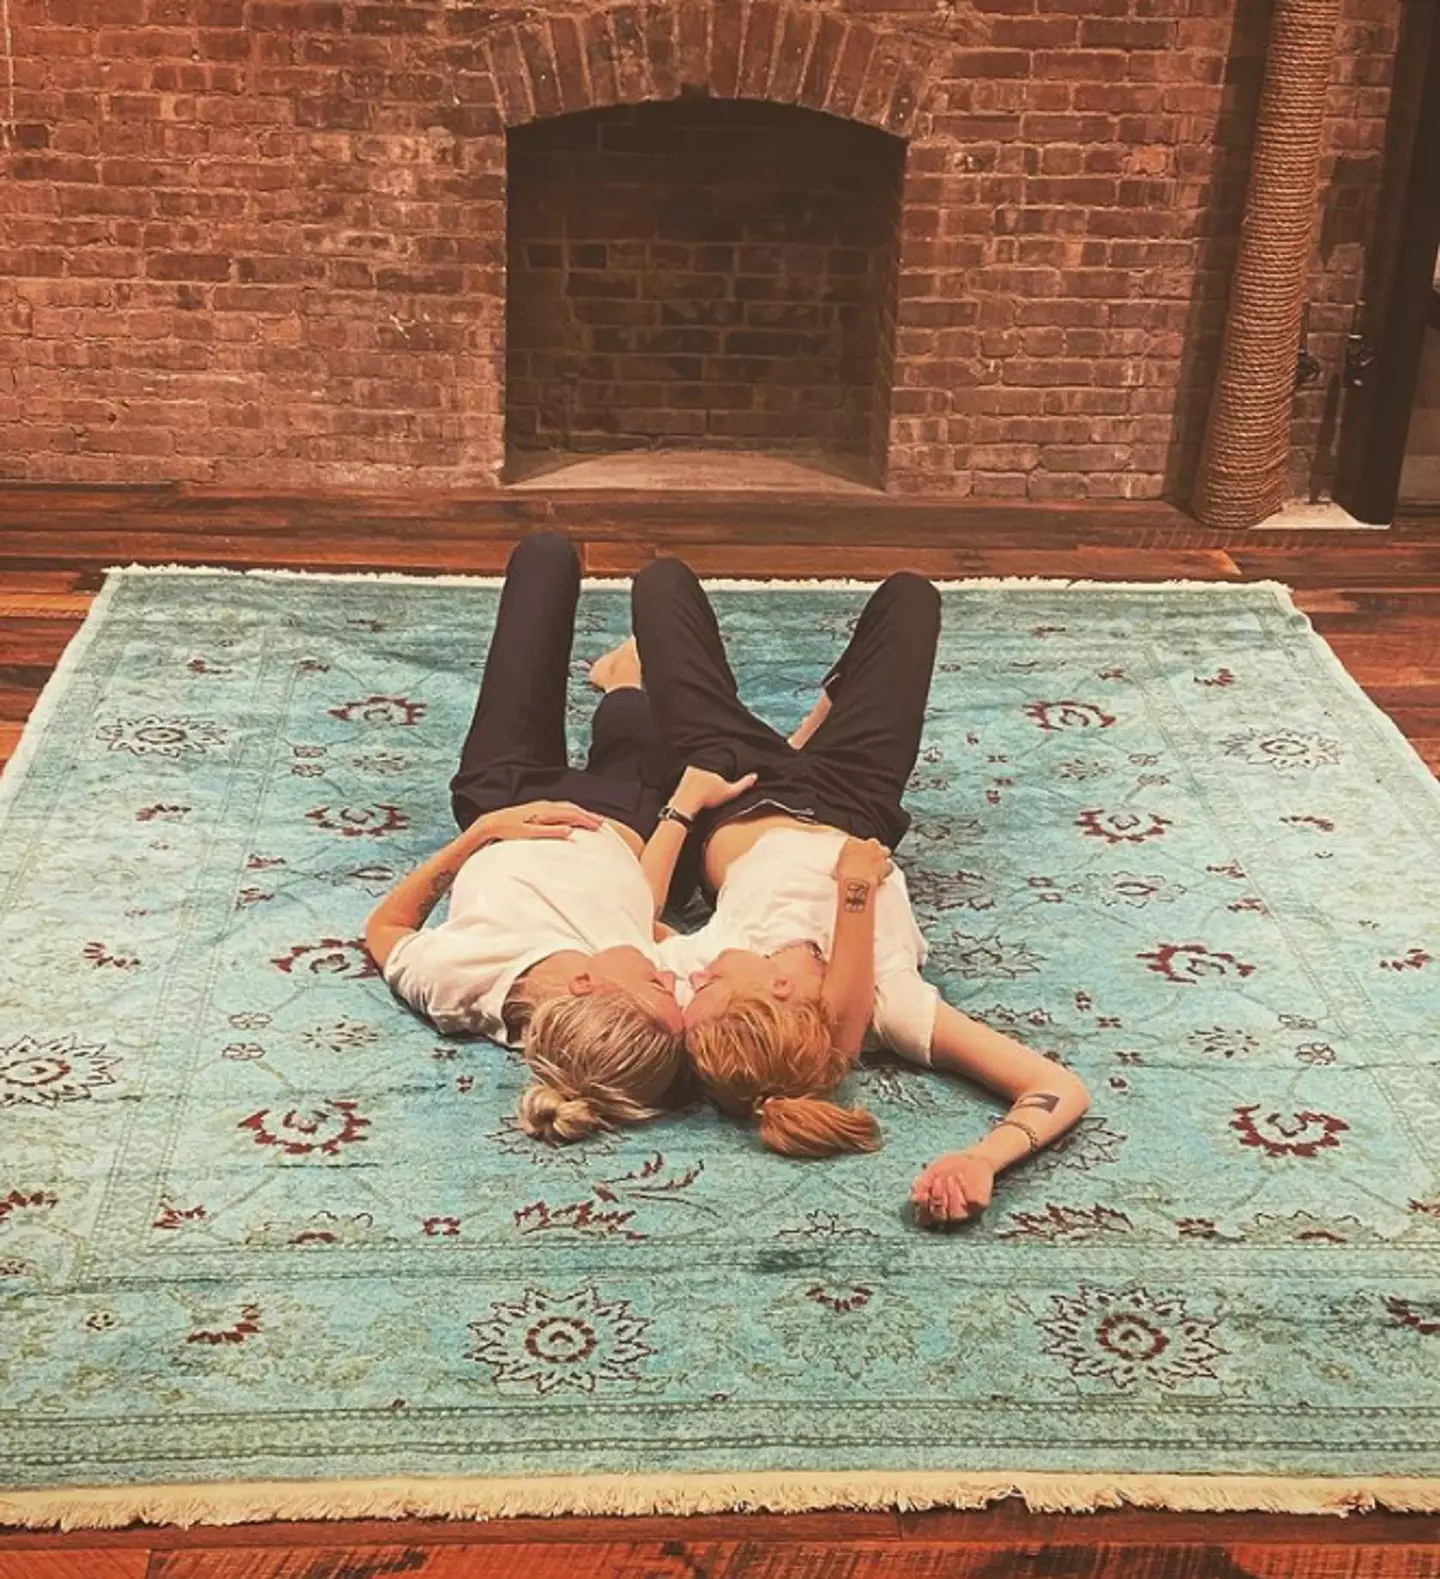 Kristen has appeared on Dylan's Instagram (